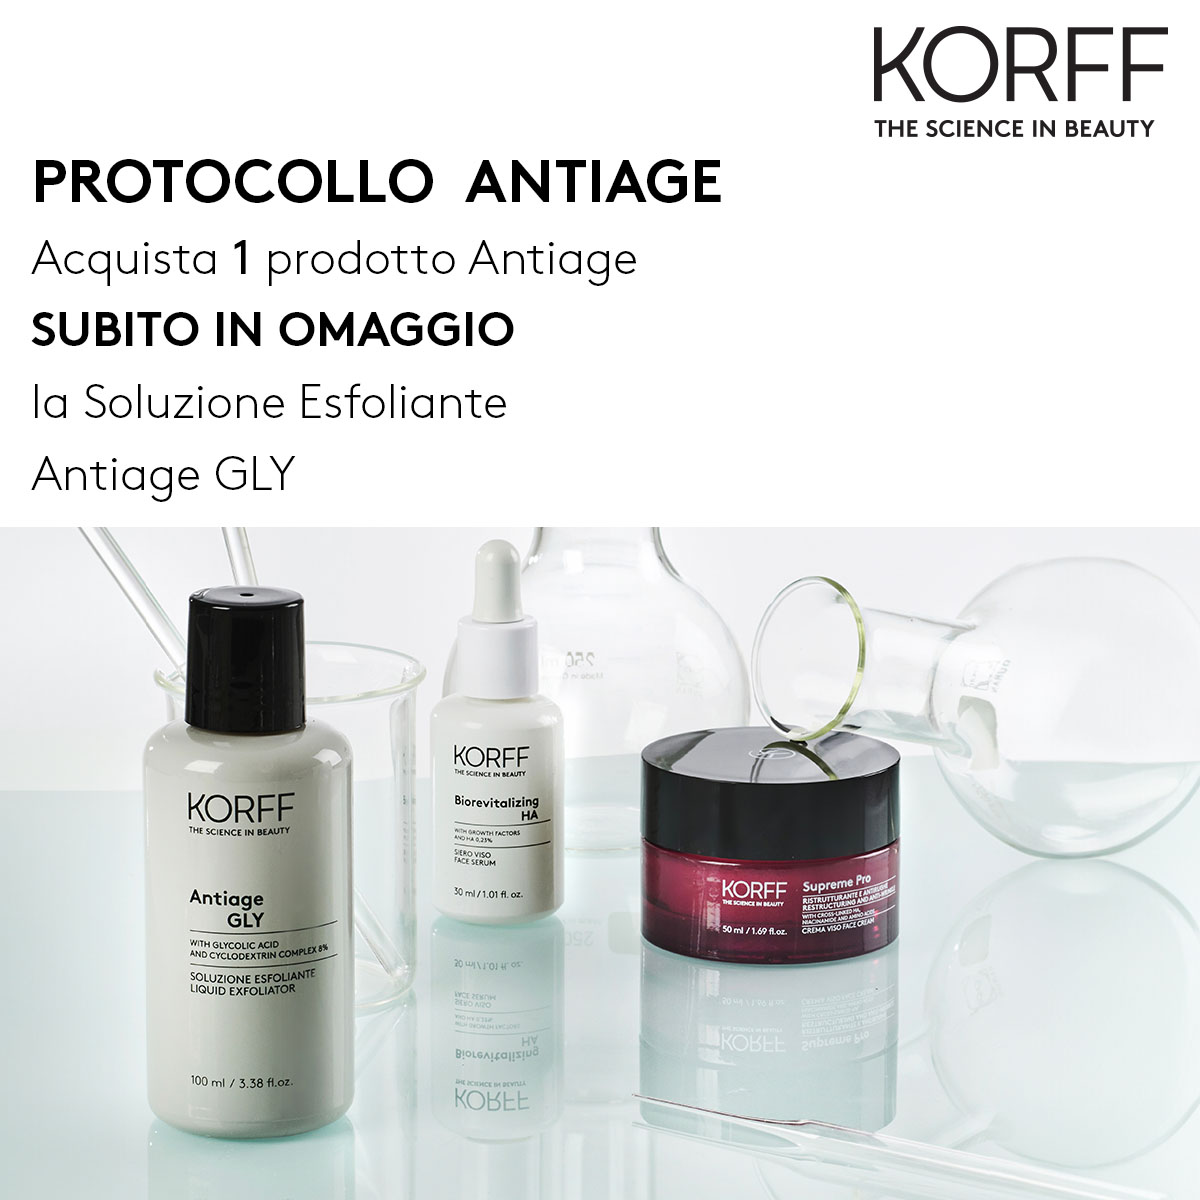 Korff - Protocollo antiage, acquista 1 prodotto anti-età e ricevi subito in omaggio la soluzione esfoliante Antiage GLY 30ml!